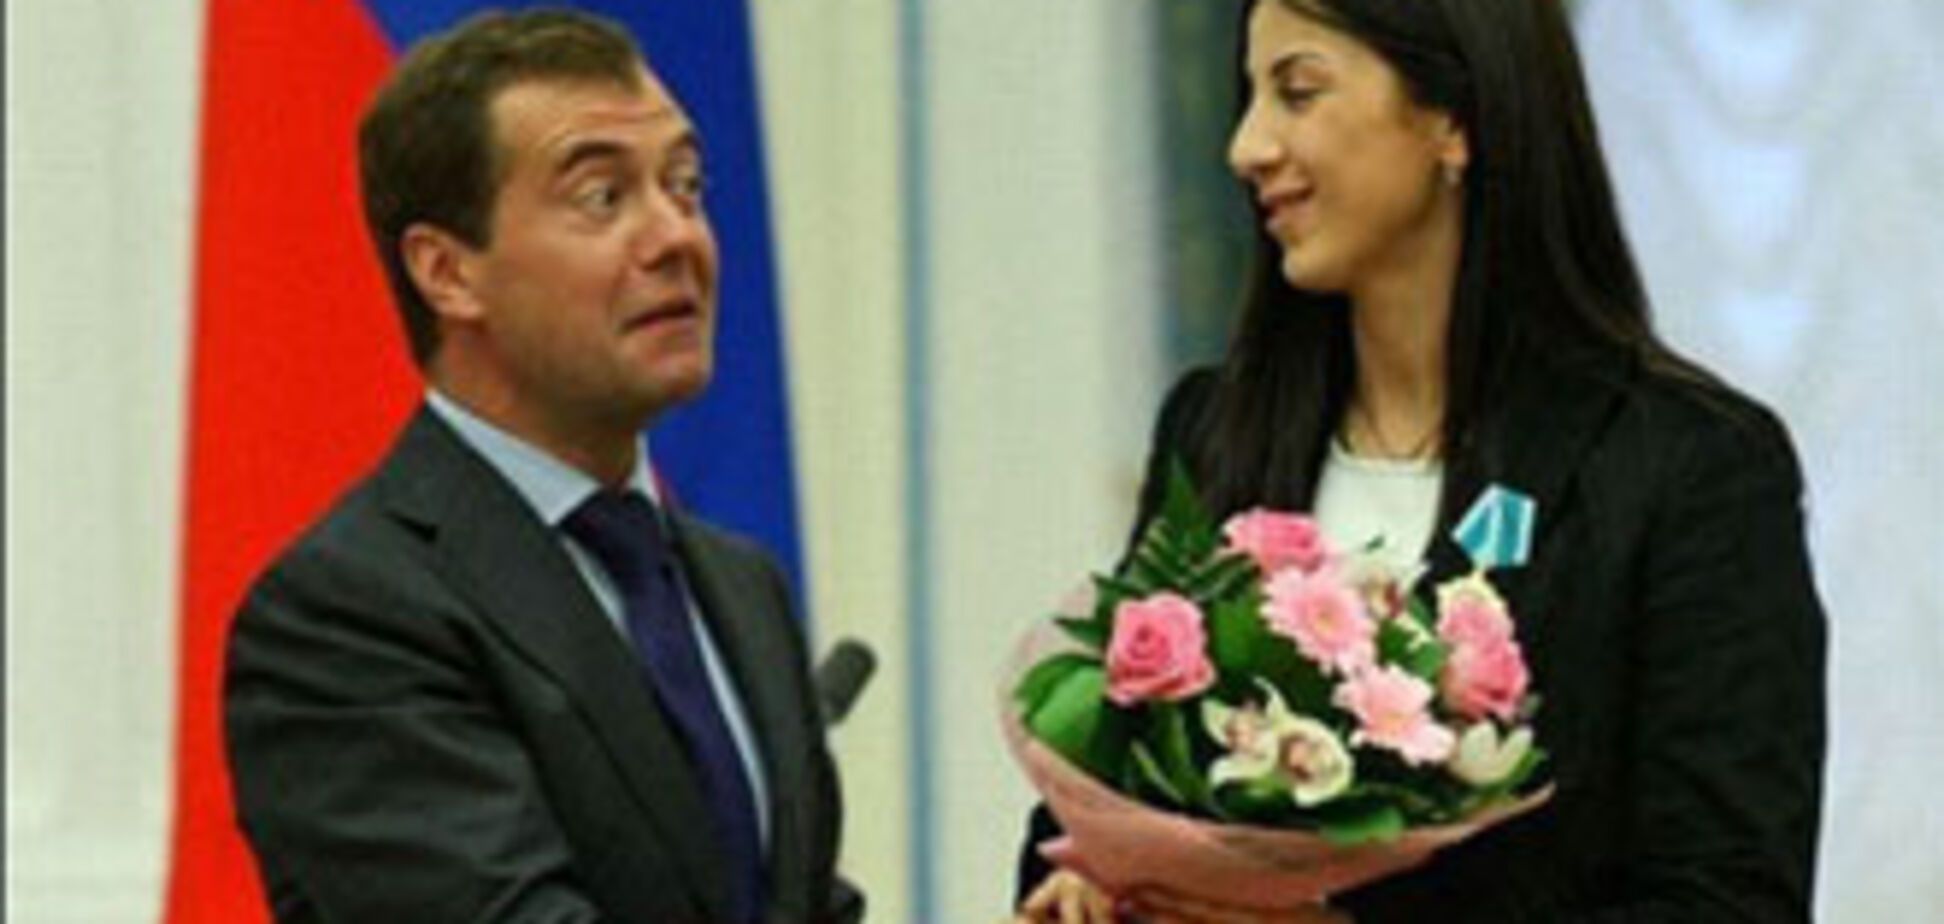 Российский президент болезненно реагирует на женщин (ФОТО)